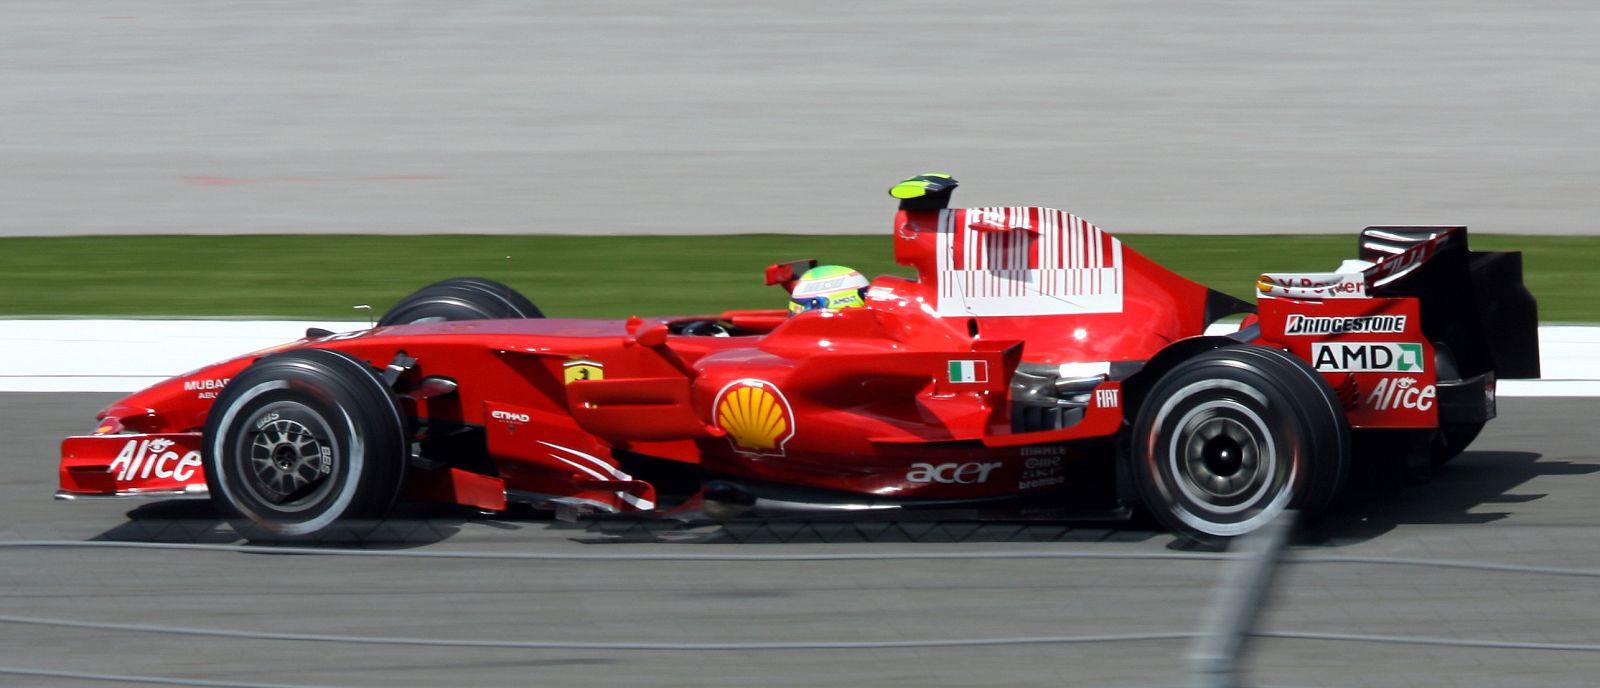 Massa ha hecho una gran carrera y ha conseguido acabar primero en Estambul con su Ferrari